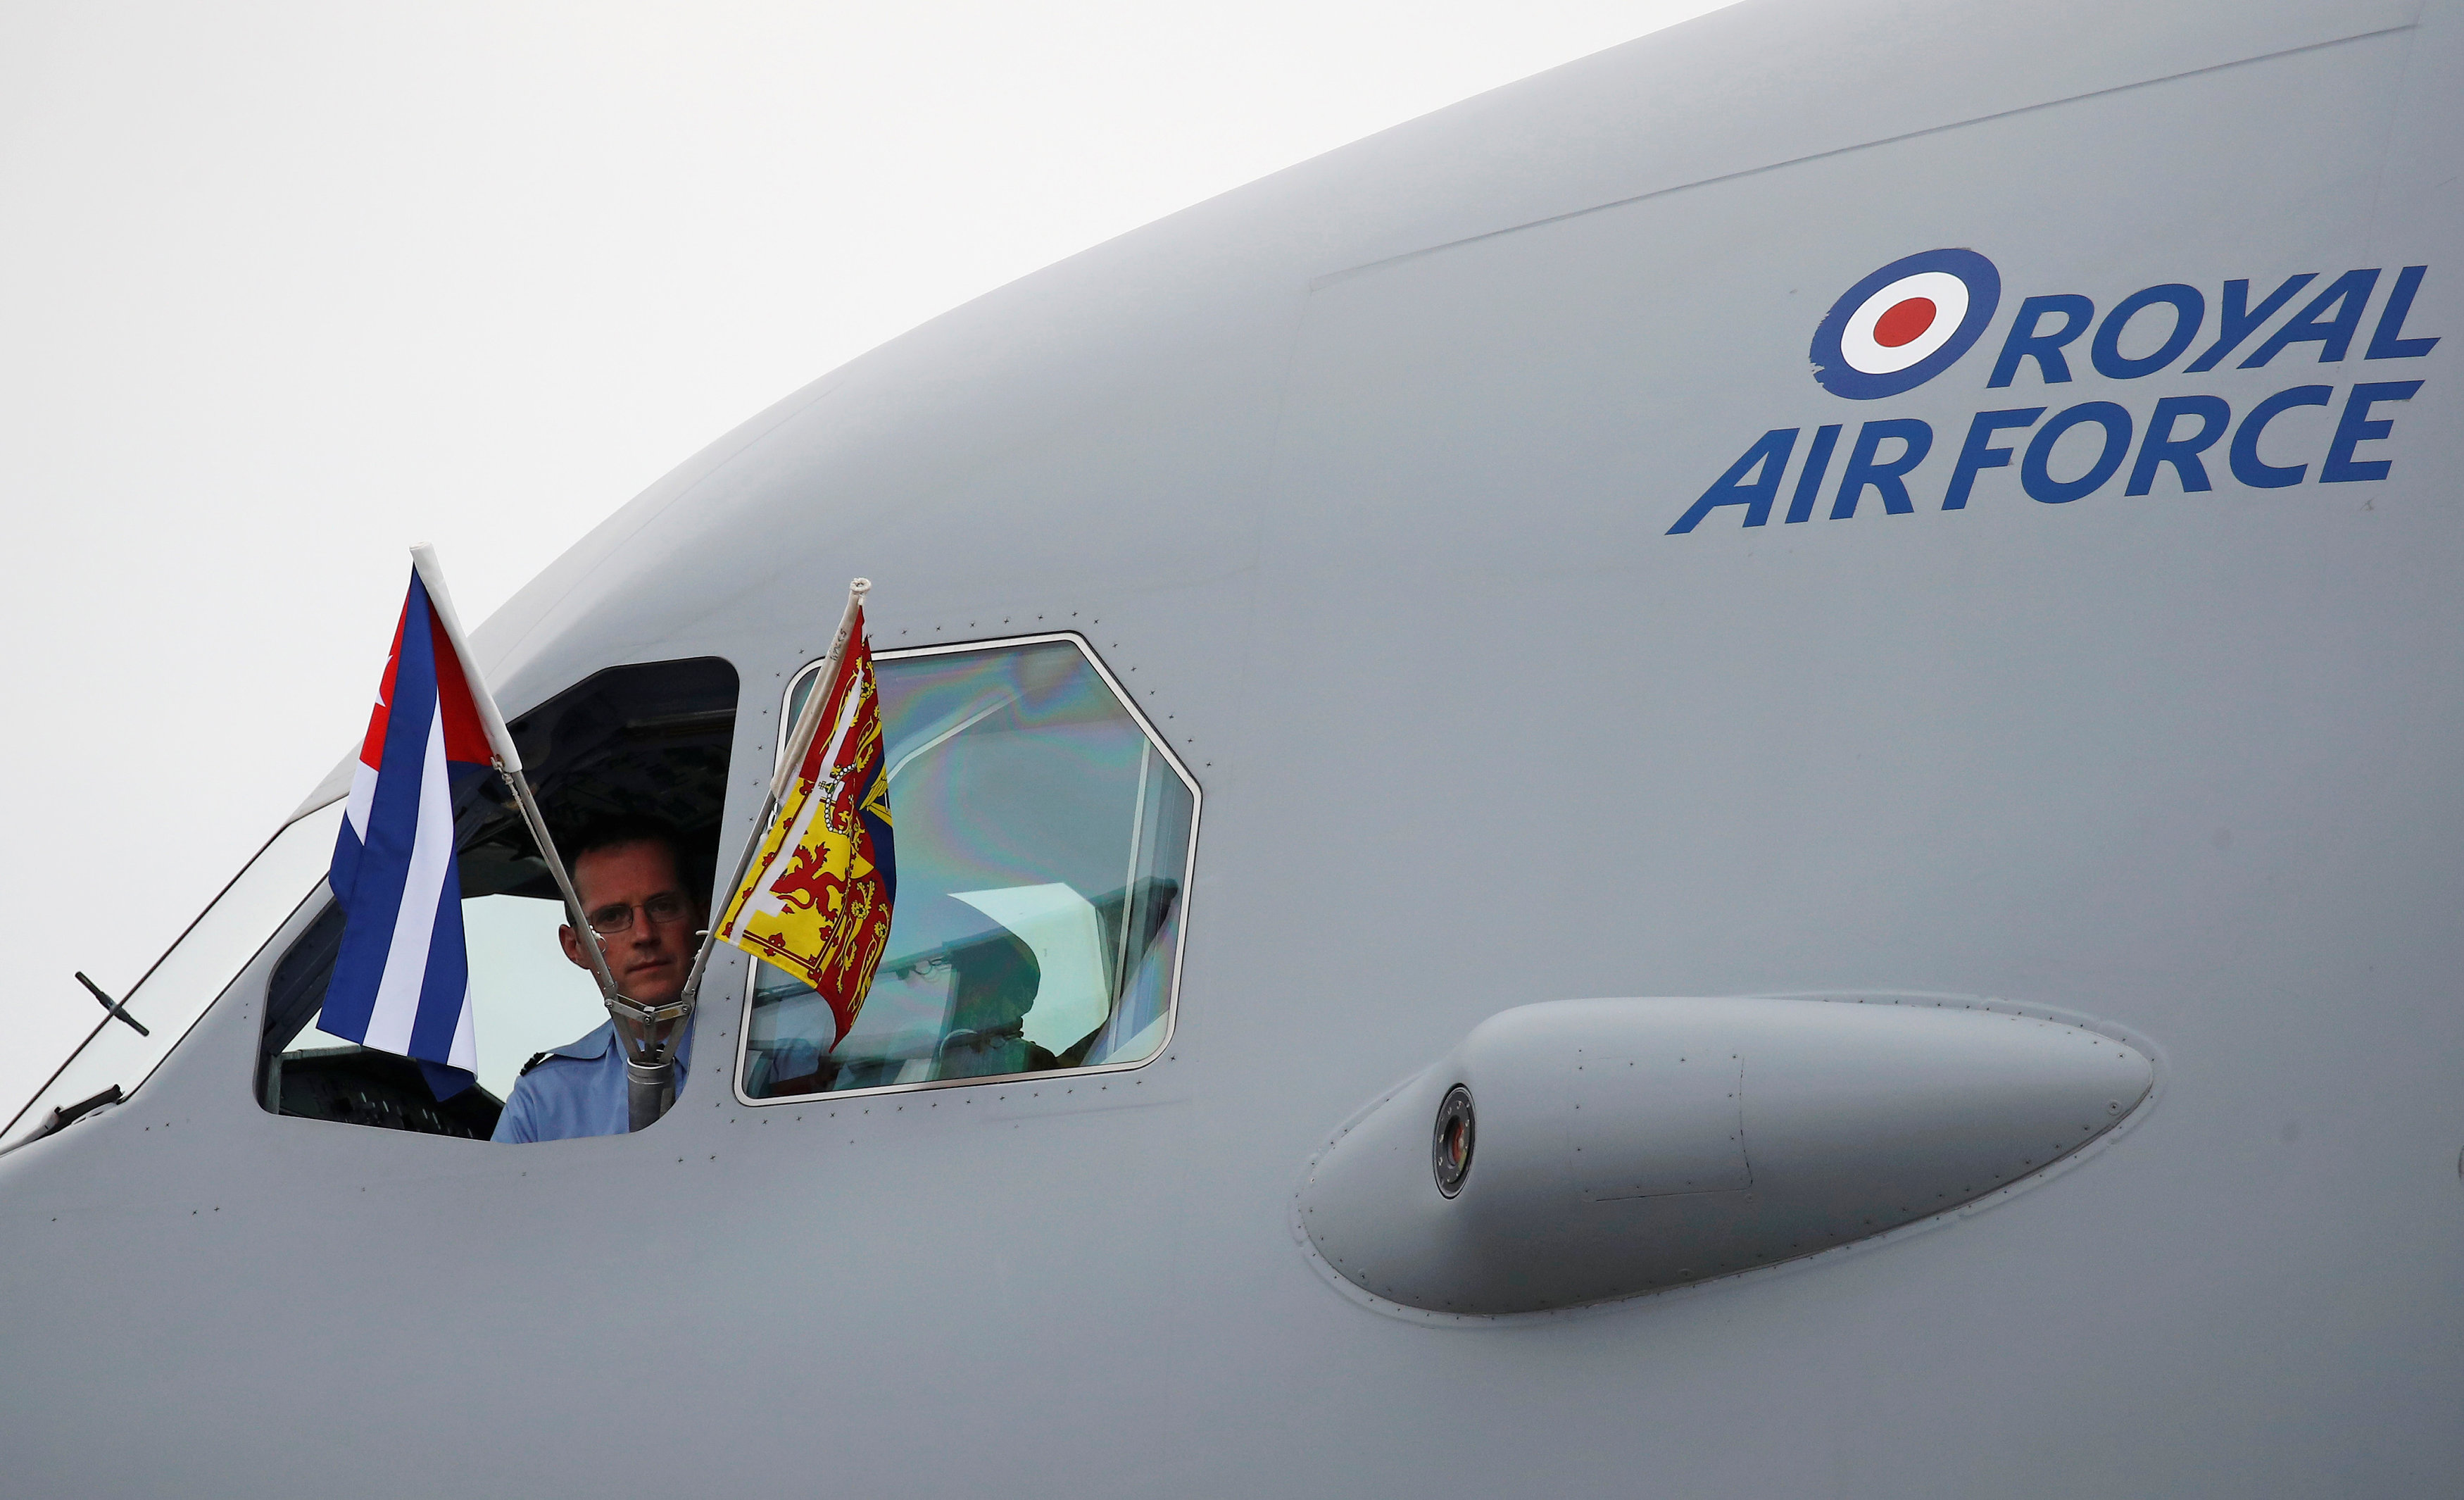 El avión de la fuerza aérea británica al aterrizar en La Habana (REUTERS/Phil Noble)